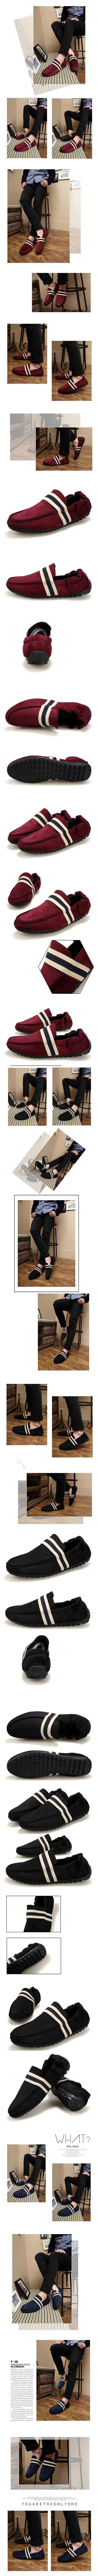 cari sepatu slip on moccasin pria model terbaru ? klik dan pesan online sekarang, ratusan model moccasin ada di pfp store